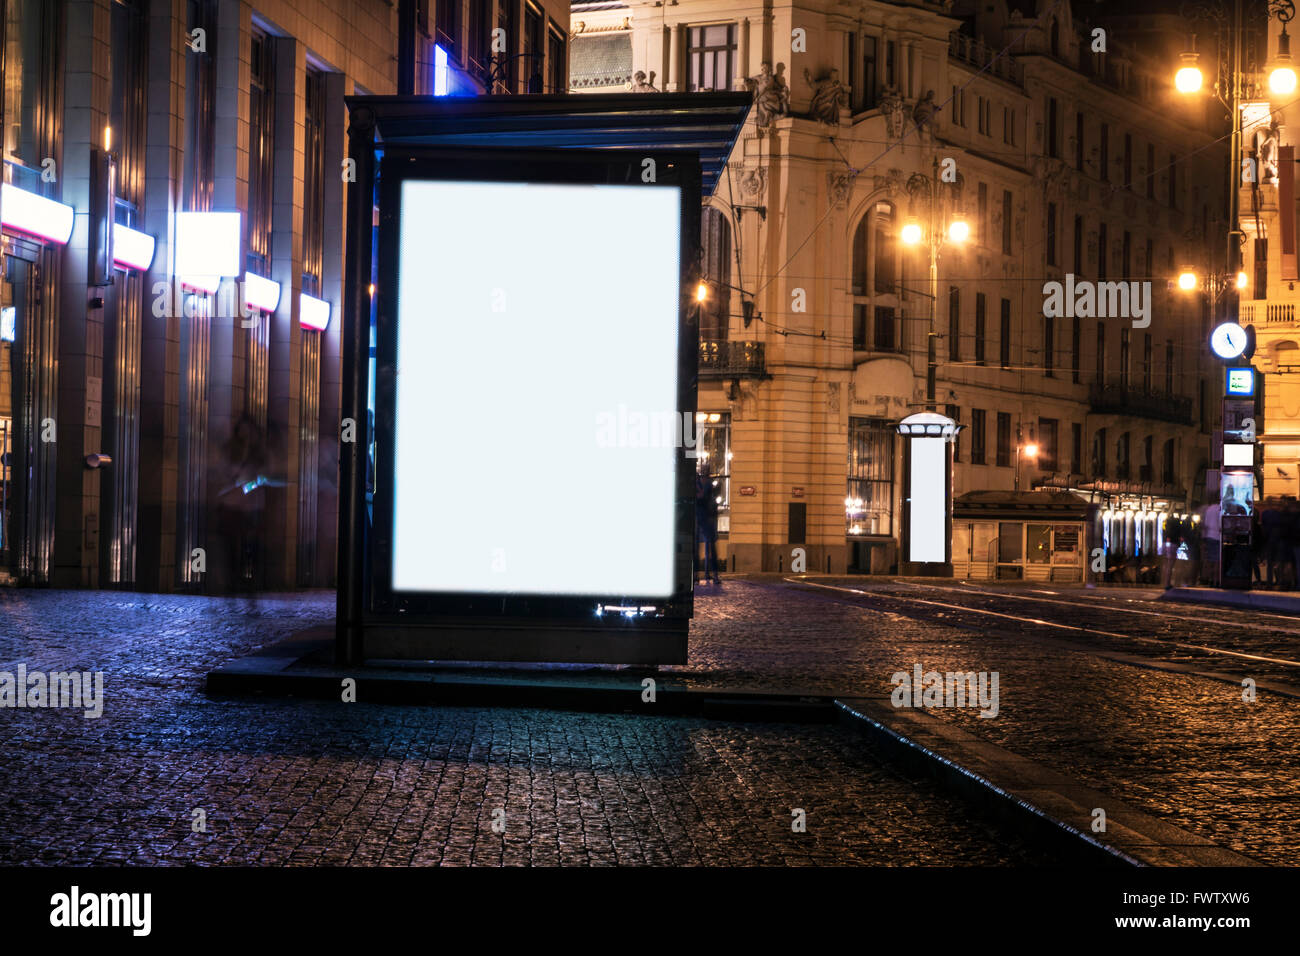 billboard at bus stop at night Stock Photo